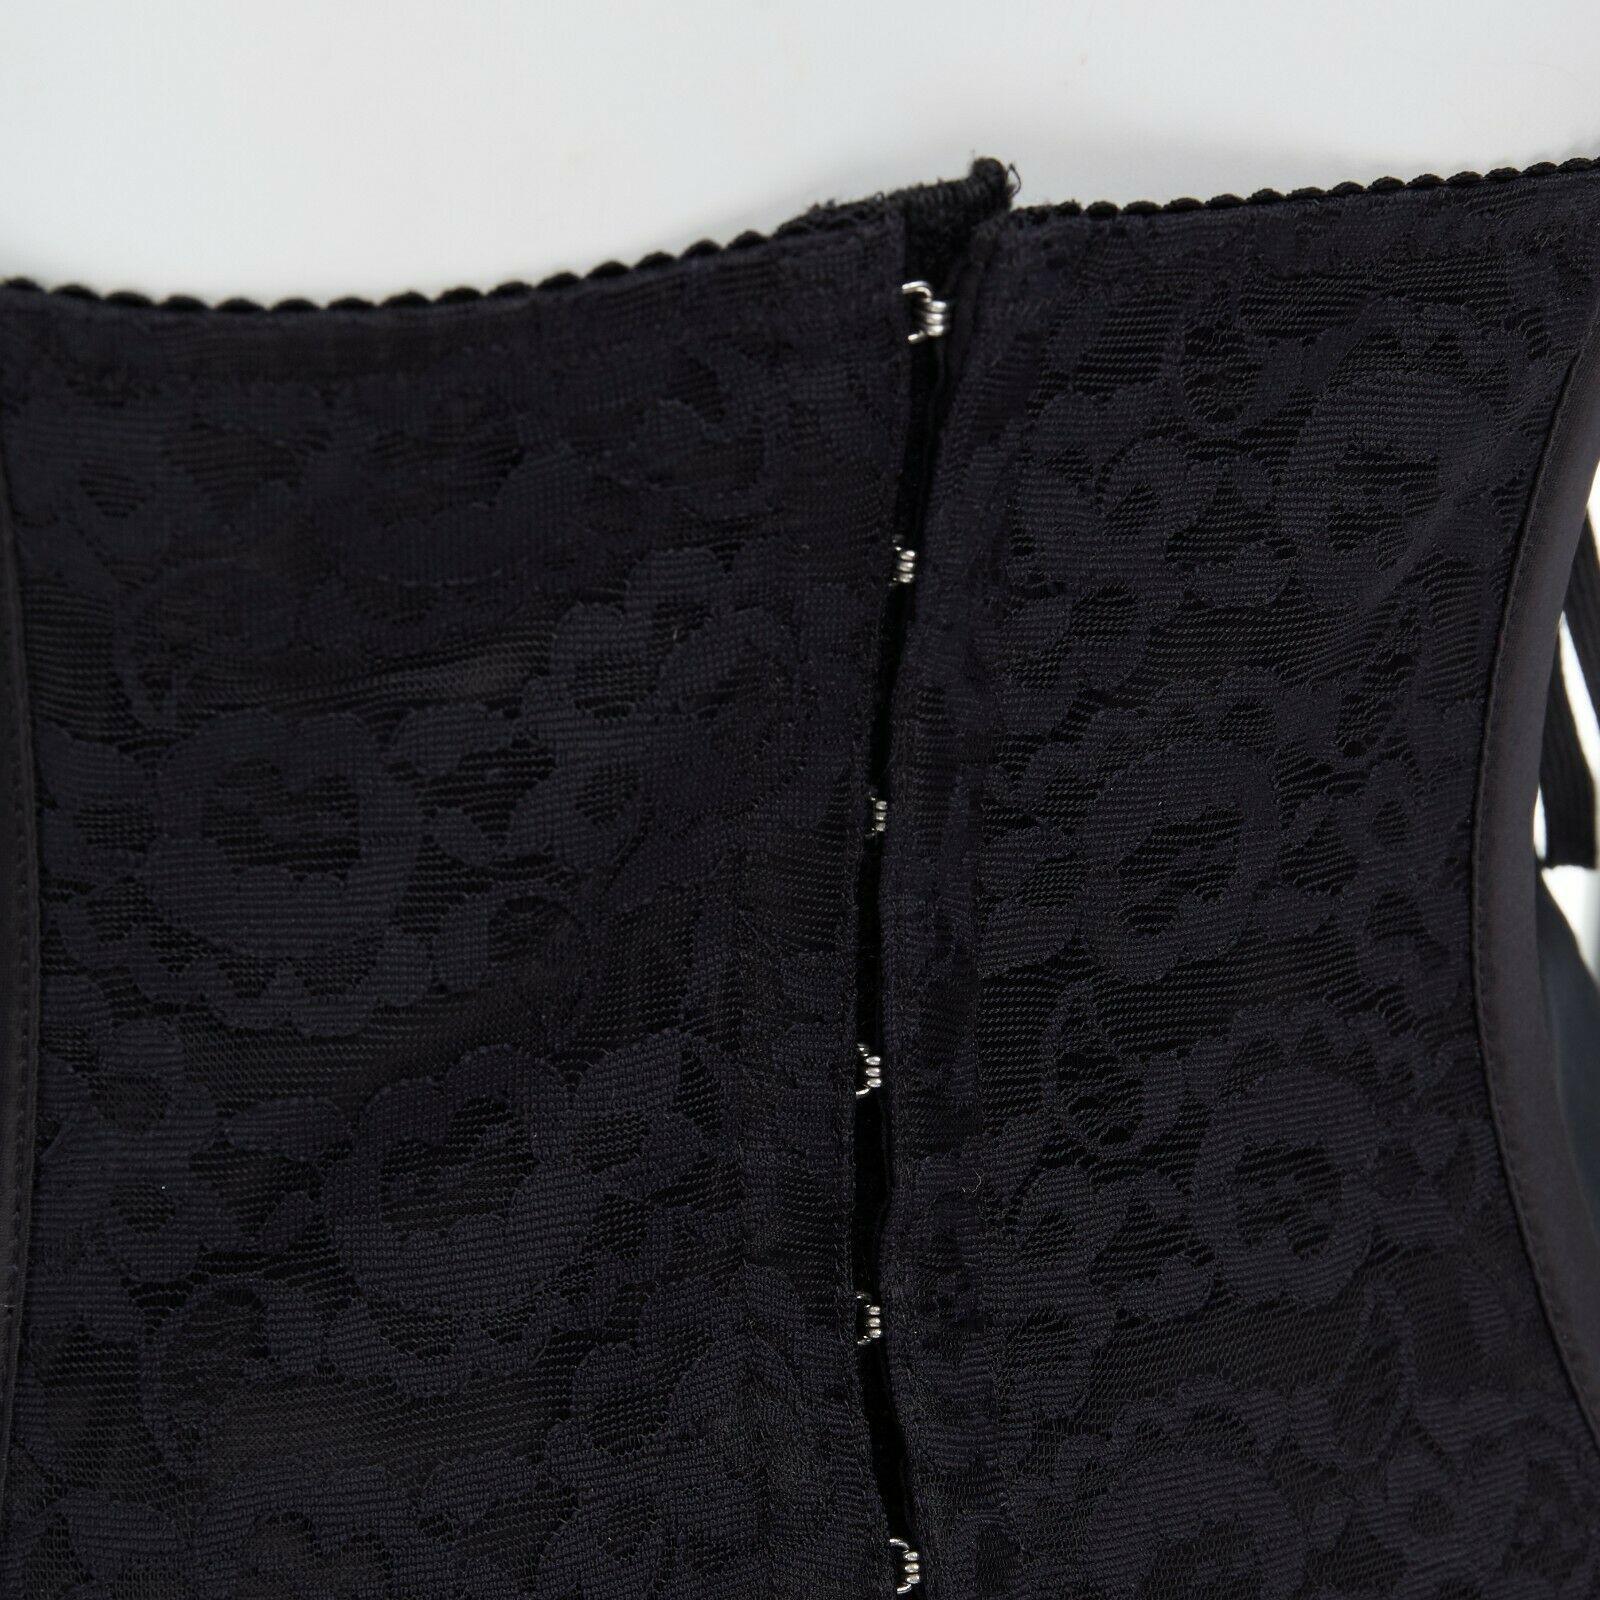 DOLCE GABBANA black floral lace boned laced up corset belt IT42 M 4